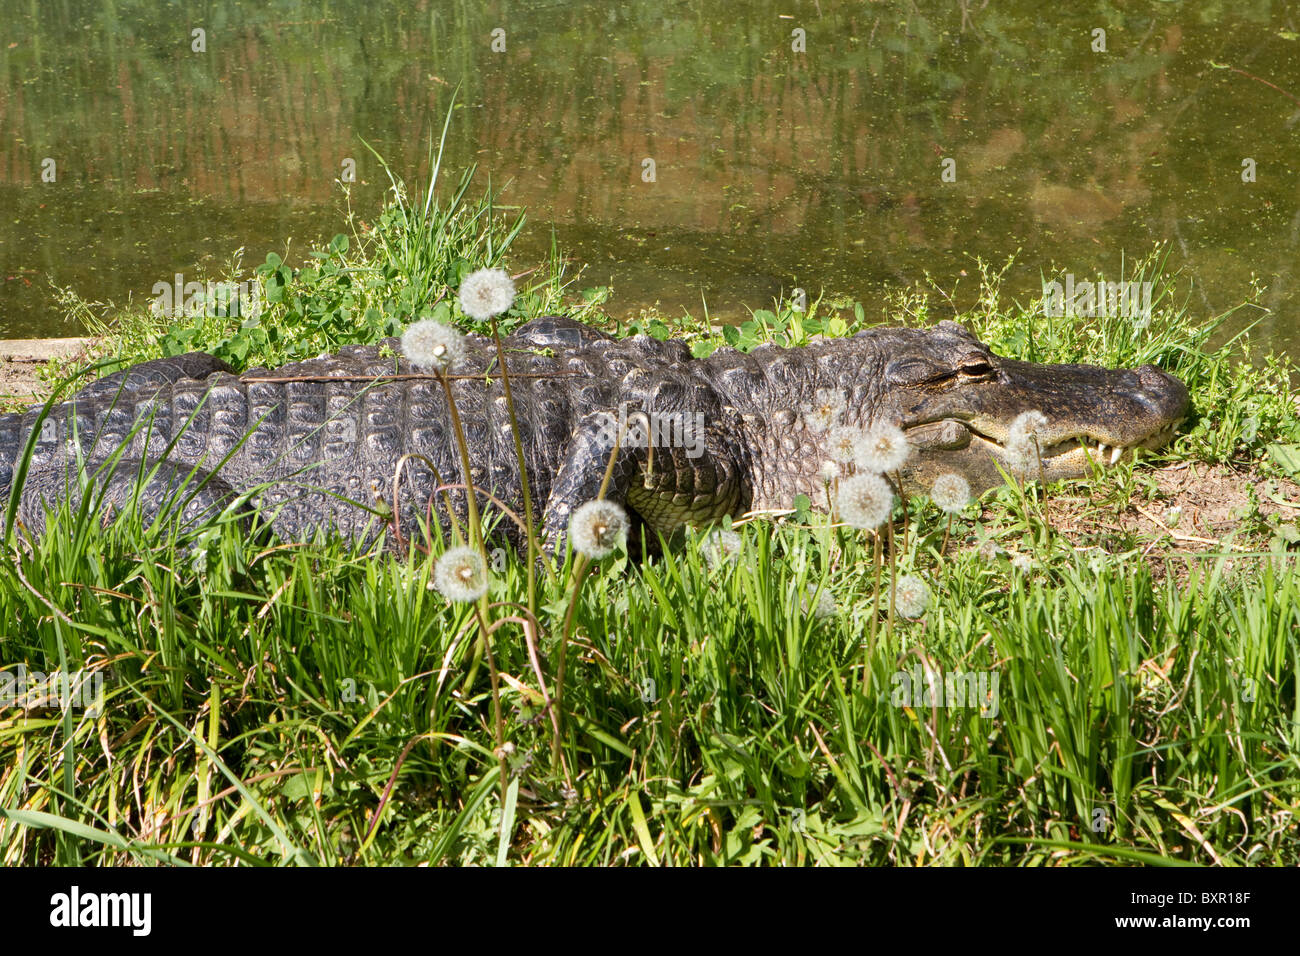 Alligator Alligator mississippiensis) soleils (lui-même d'un patch d'herbe par un étang. Banque D'Images